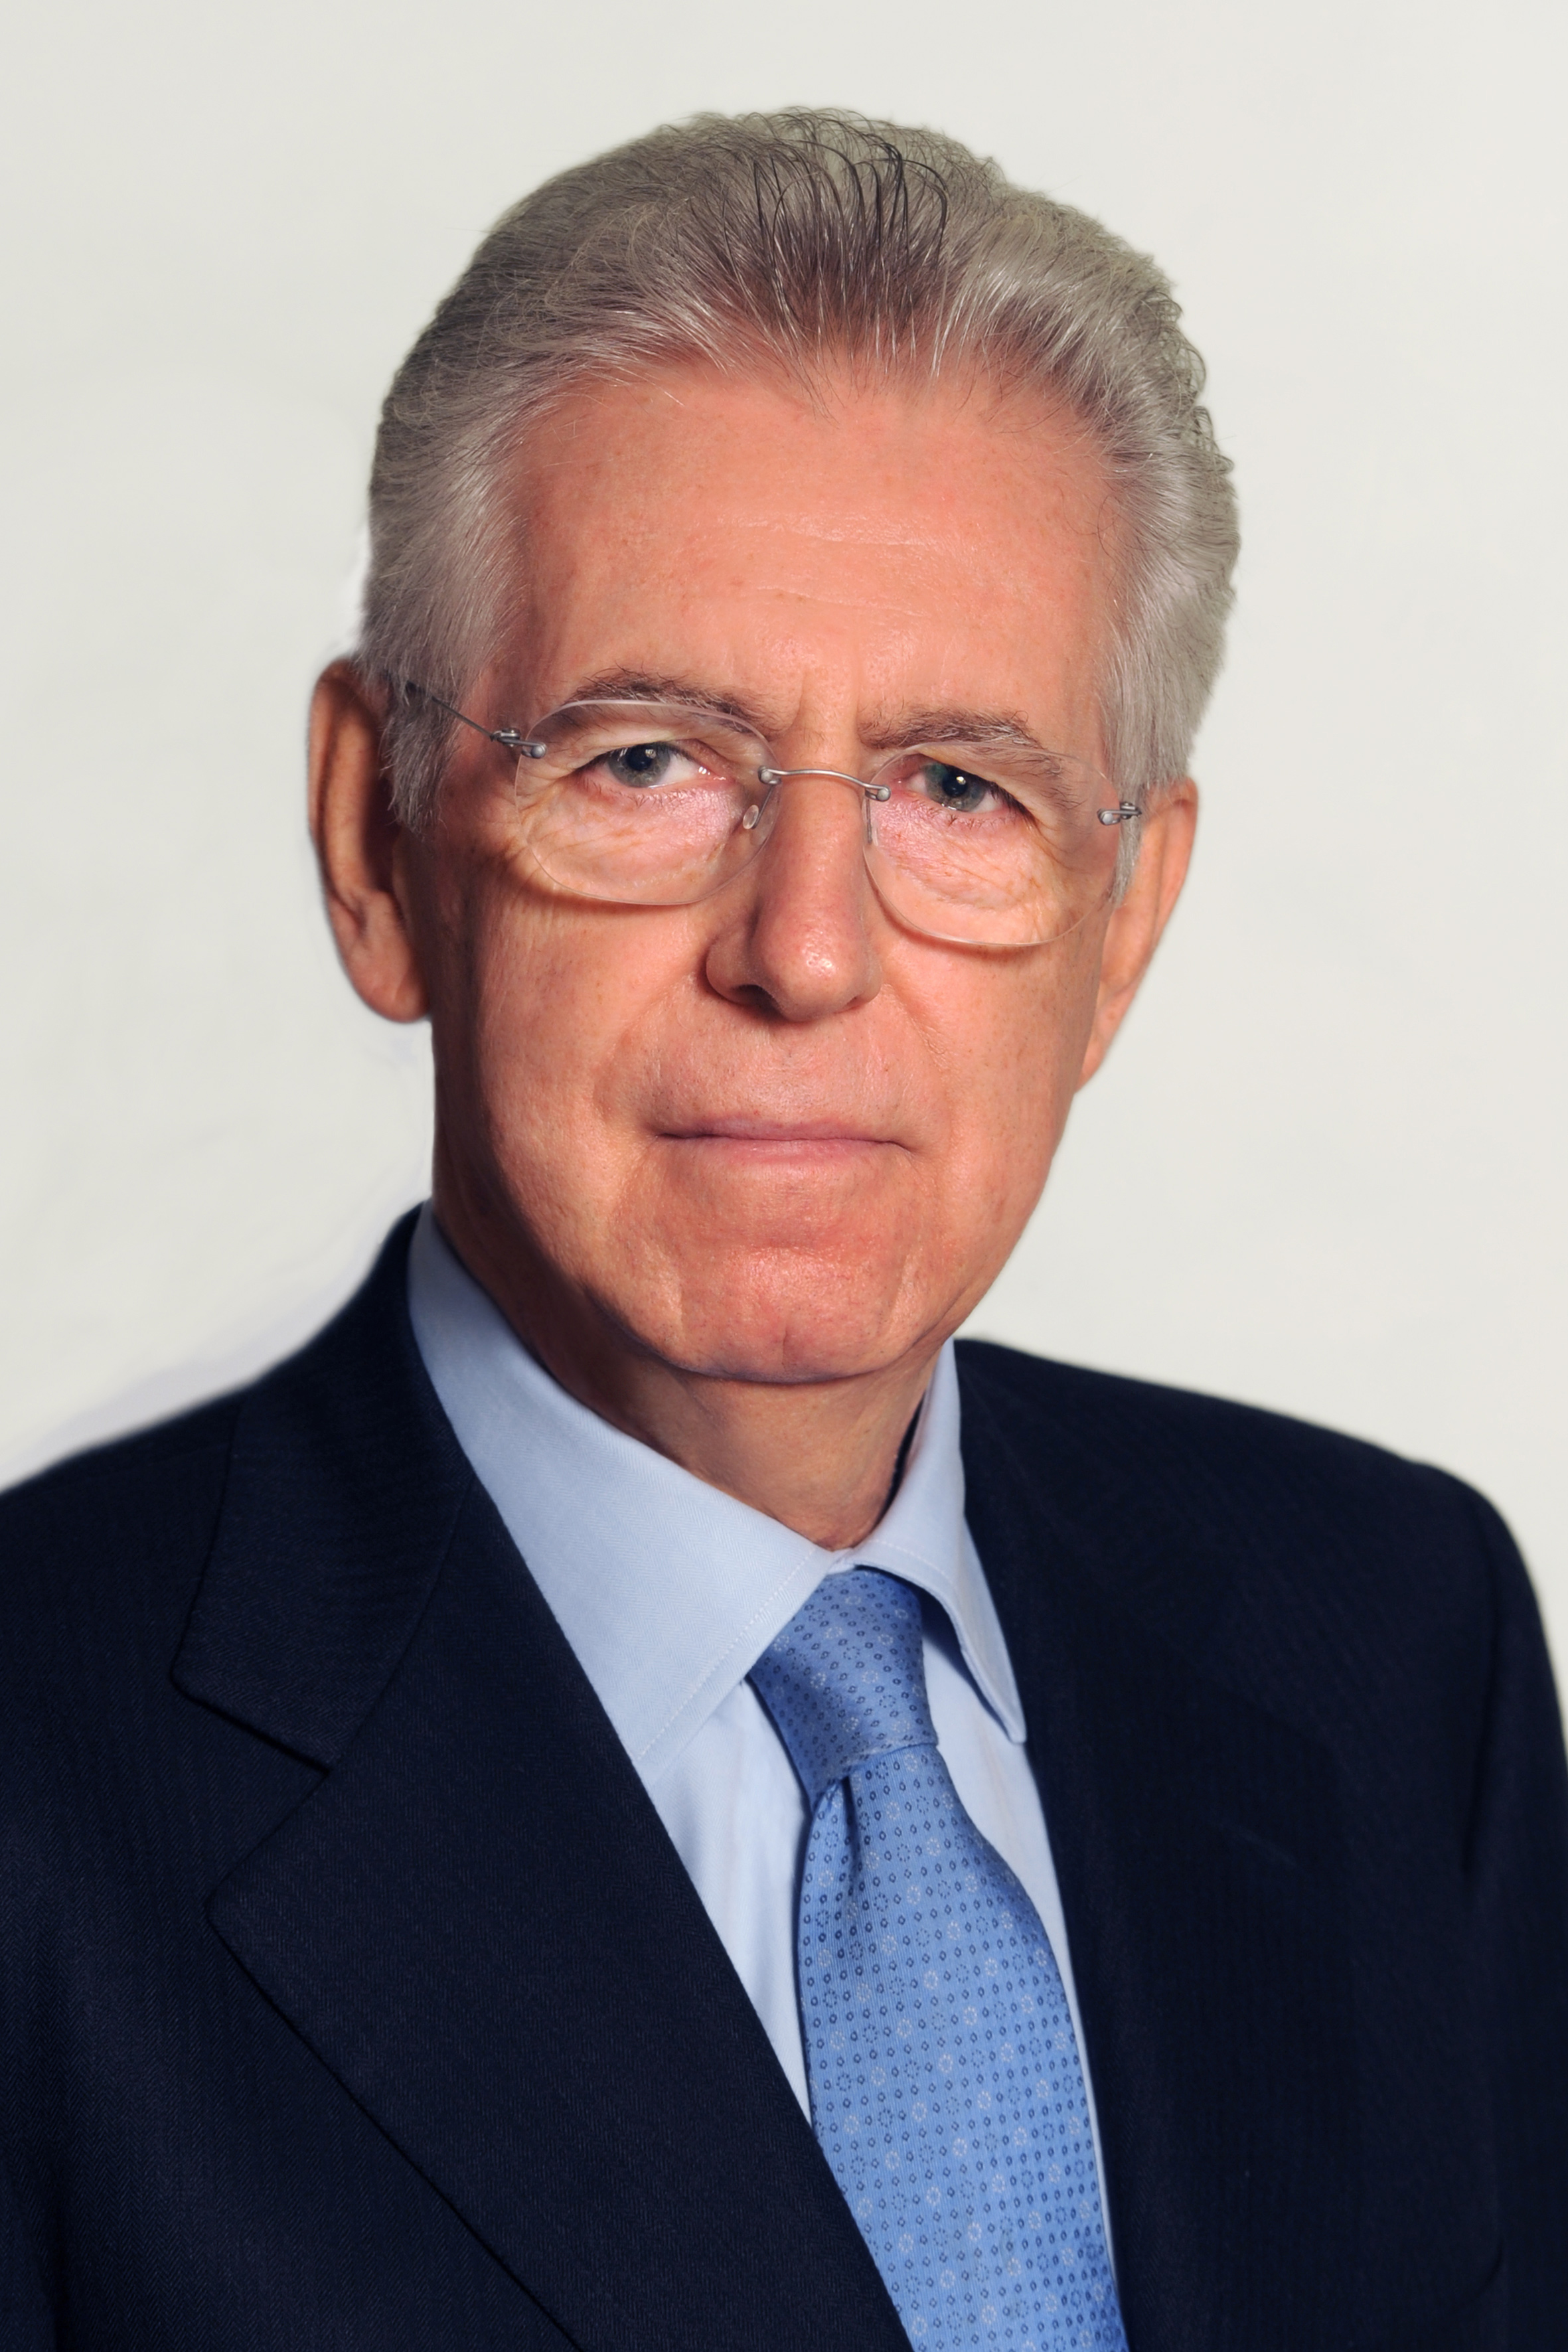  Biografía de Mario Monti